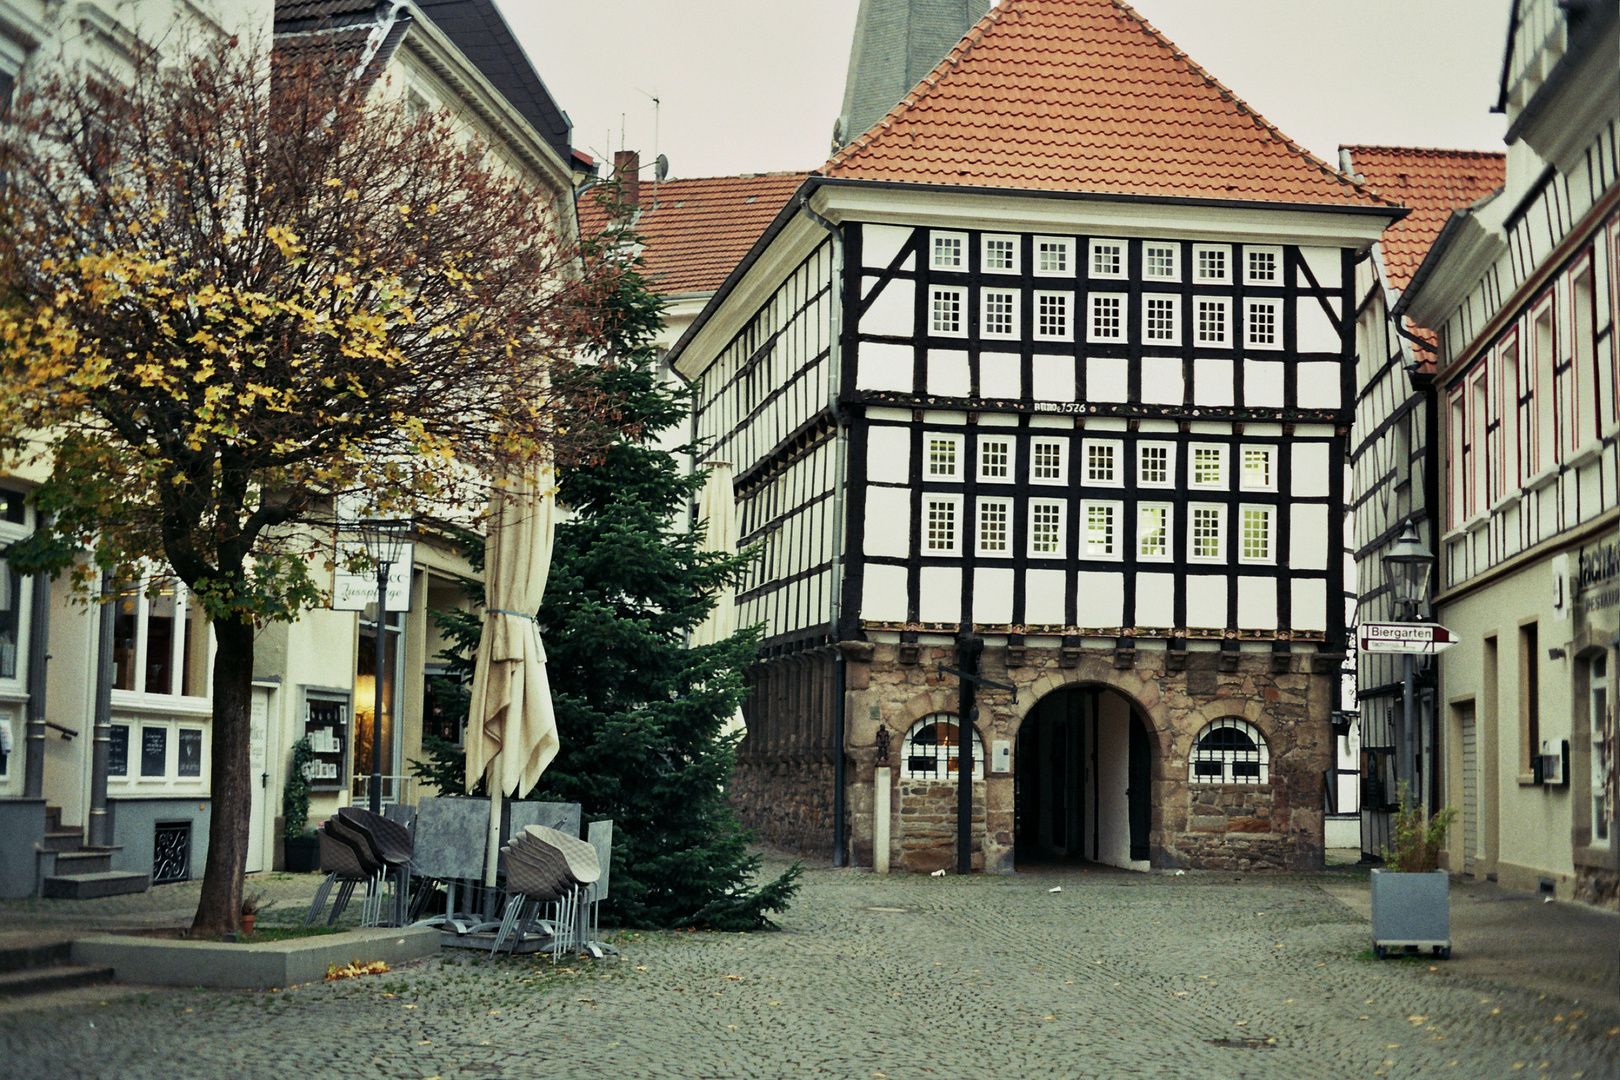 Hattinger Altstadt, November 2020